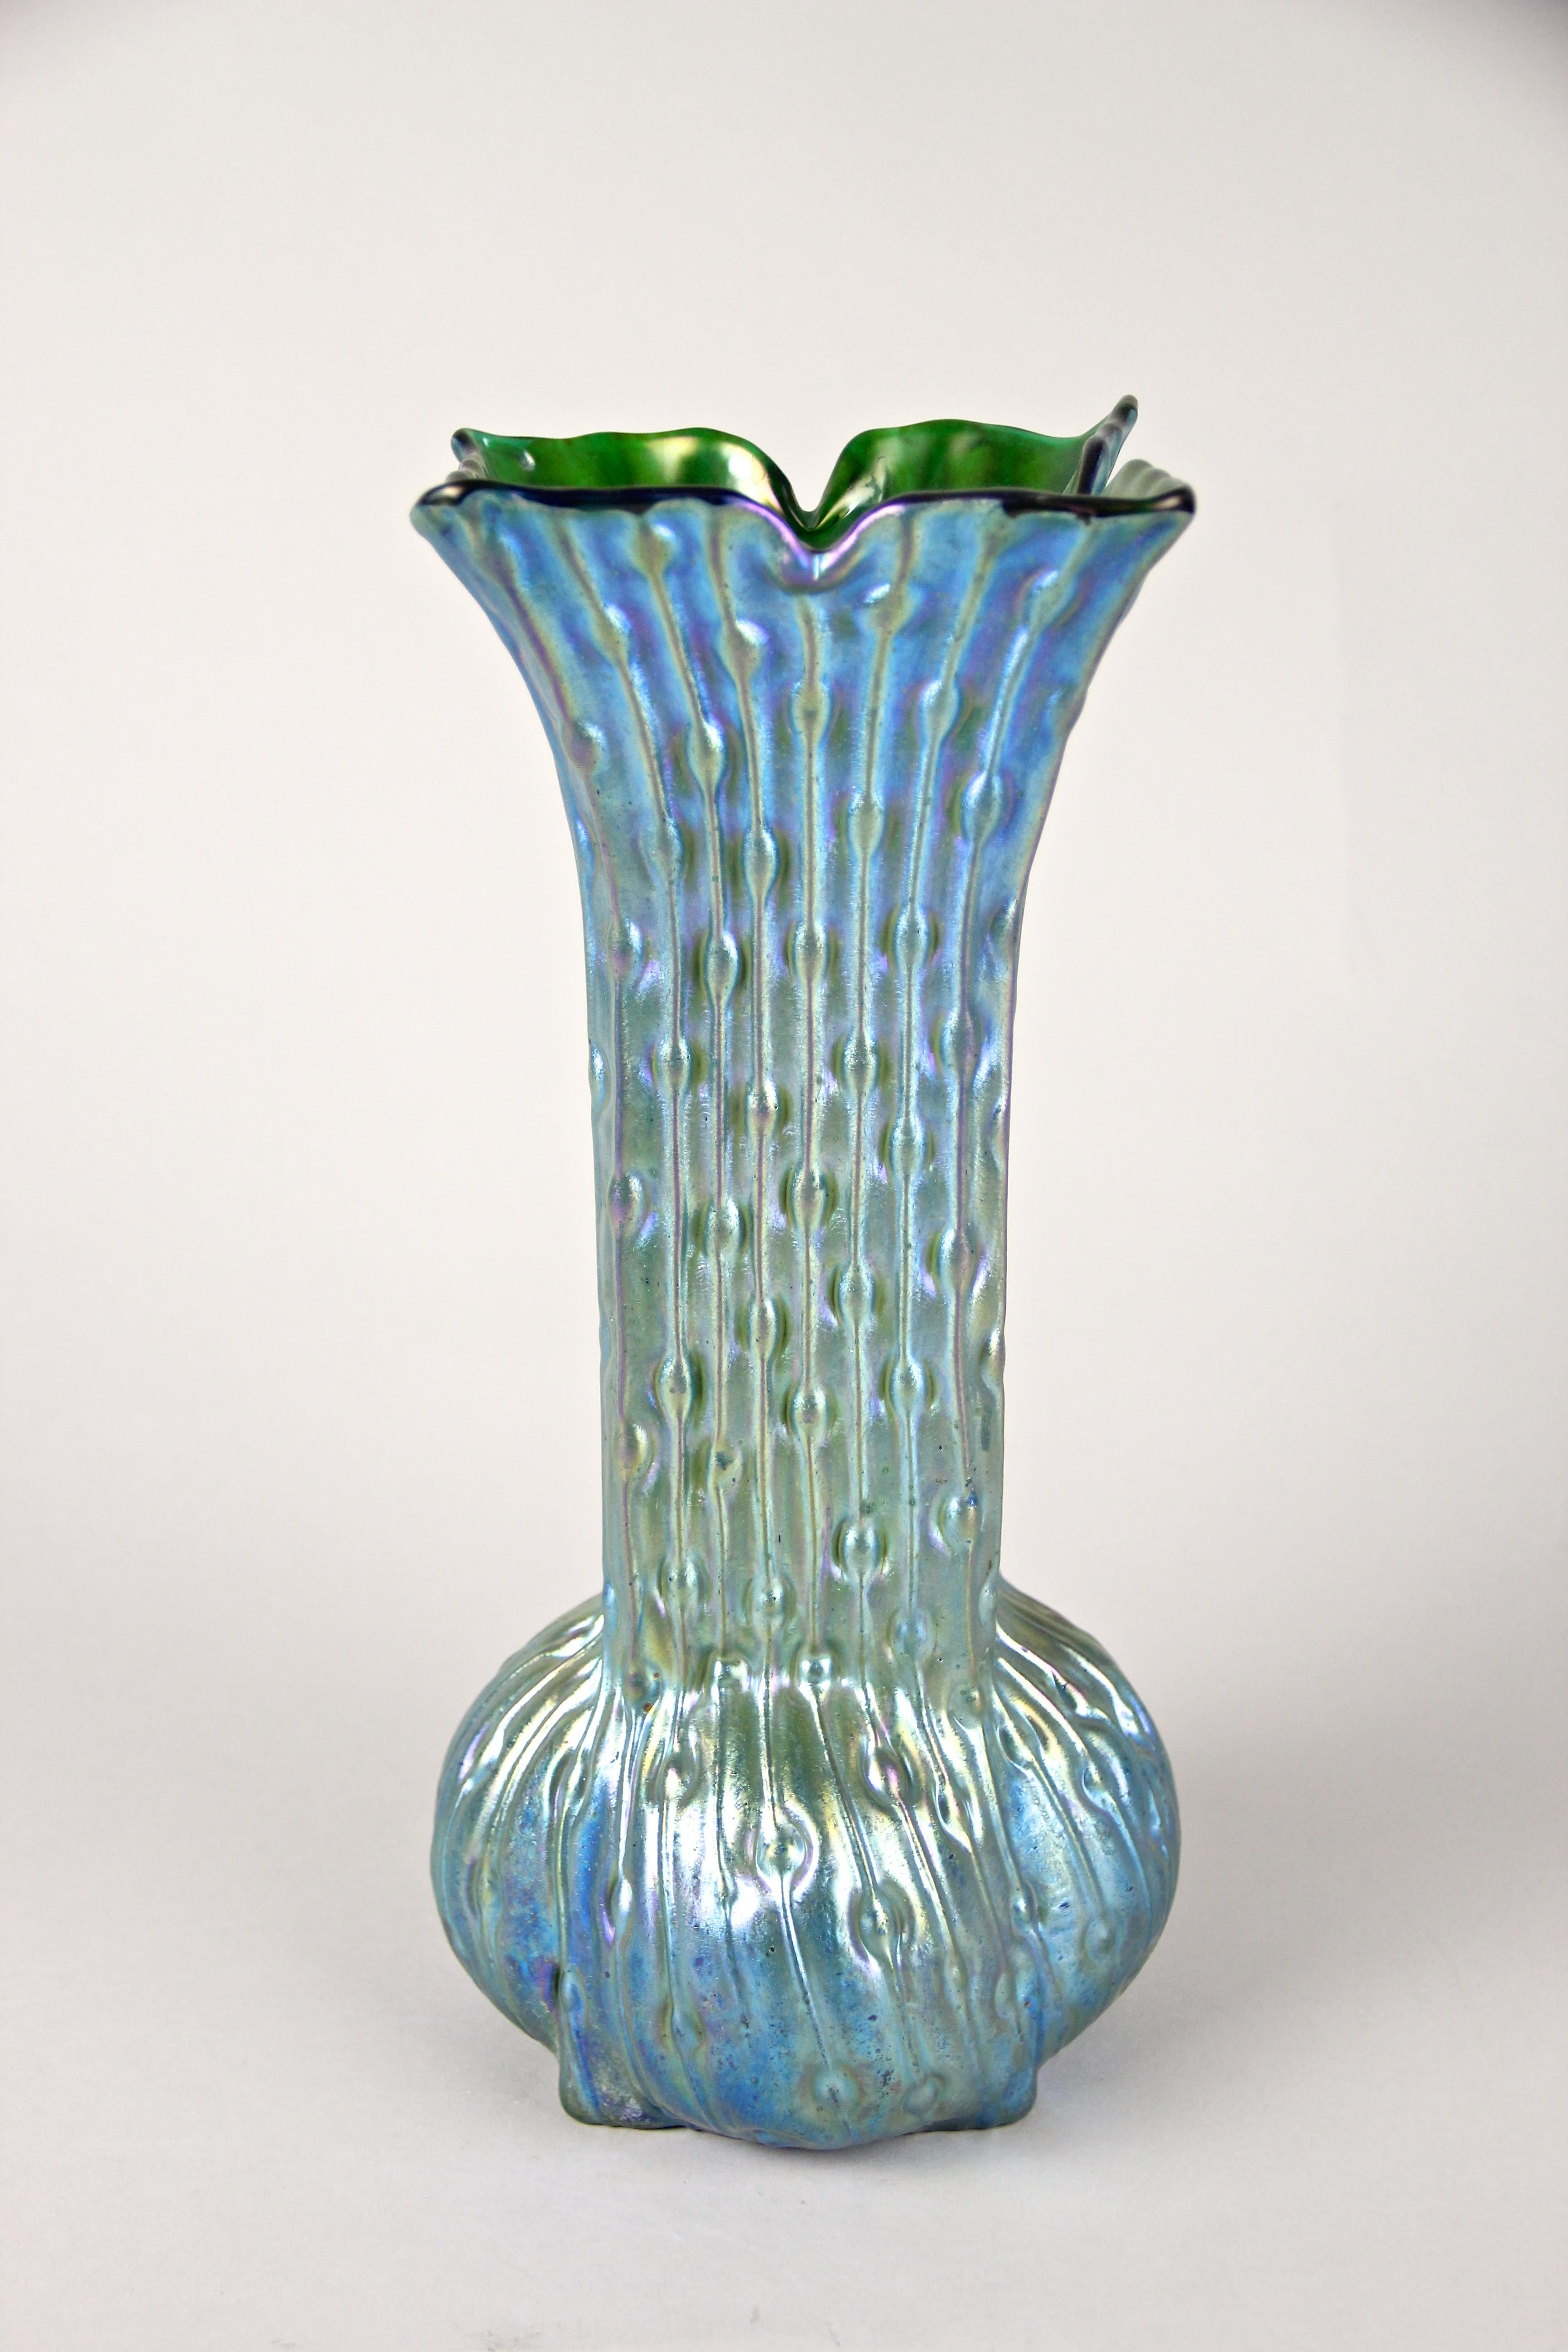 Exceptionnel vase en verre Art nouveau de Loetz Witwe Klostermuehle, Bohemia, vers 1902. Ce vase Loetz, absolument rare et irrésistible, présente une forme inhabituelle et une belle base en verre vert. La décoration extraordinaire, rappelant le